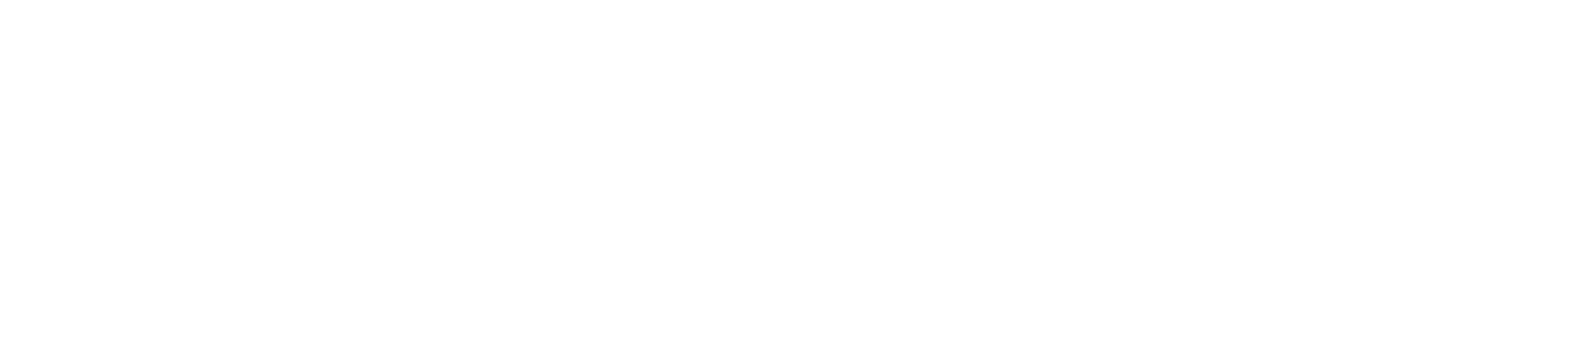 IG Group logo large for dark backgrounds (transparent PNG)